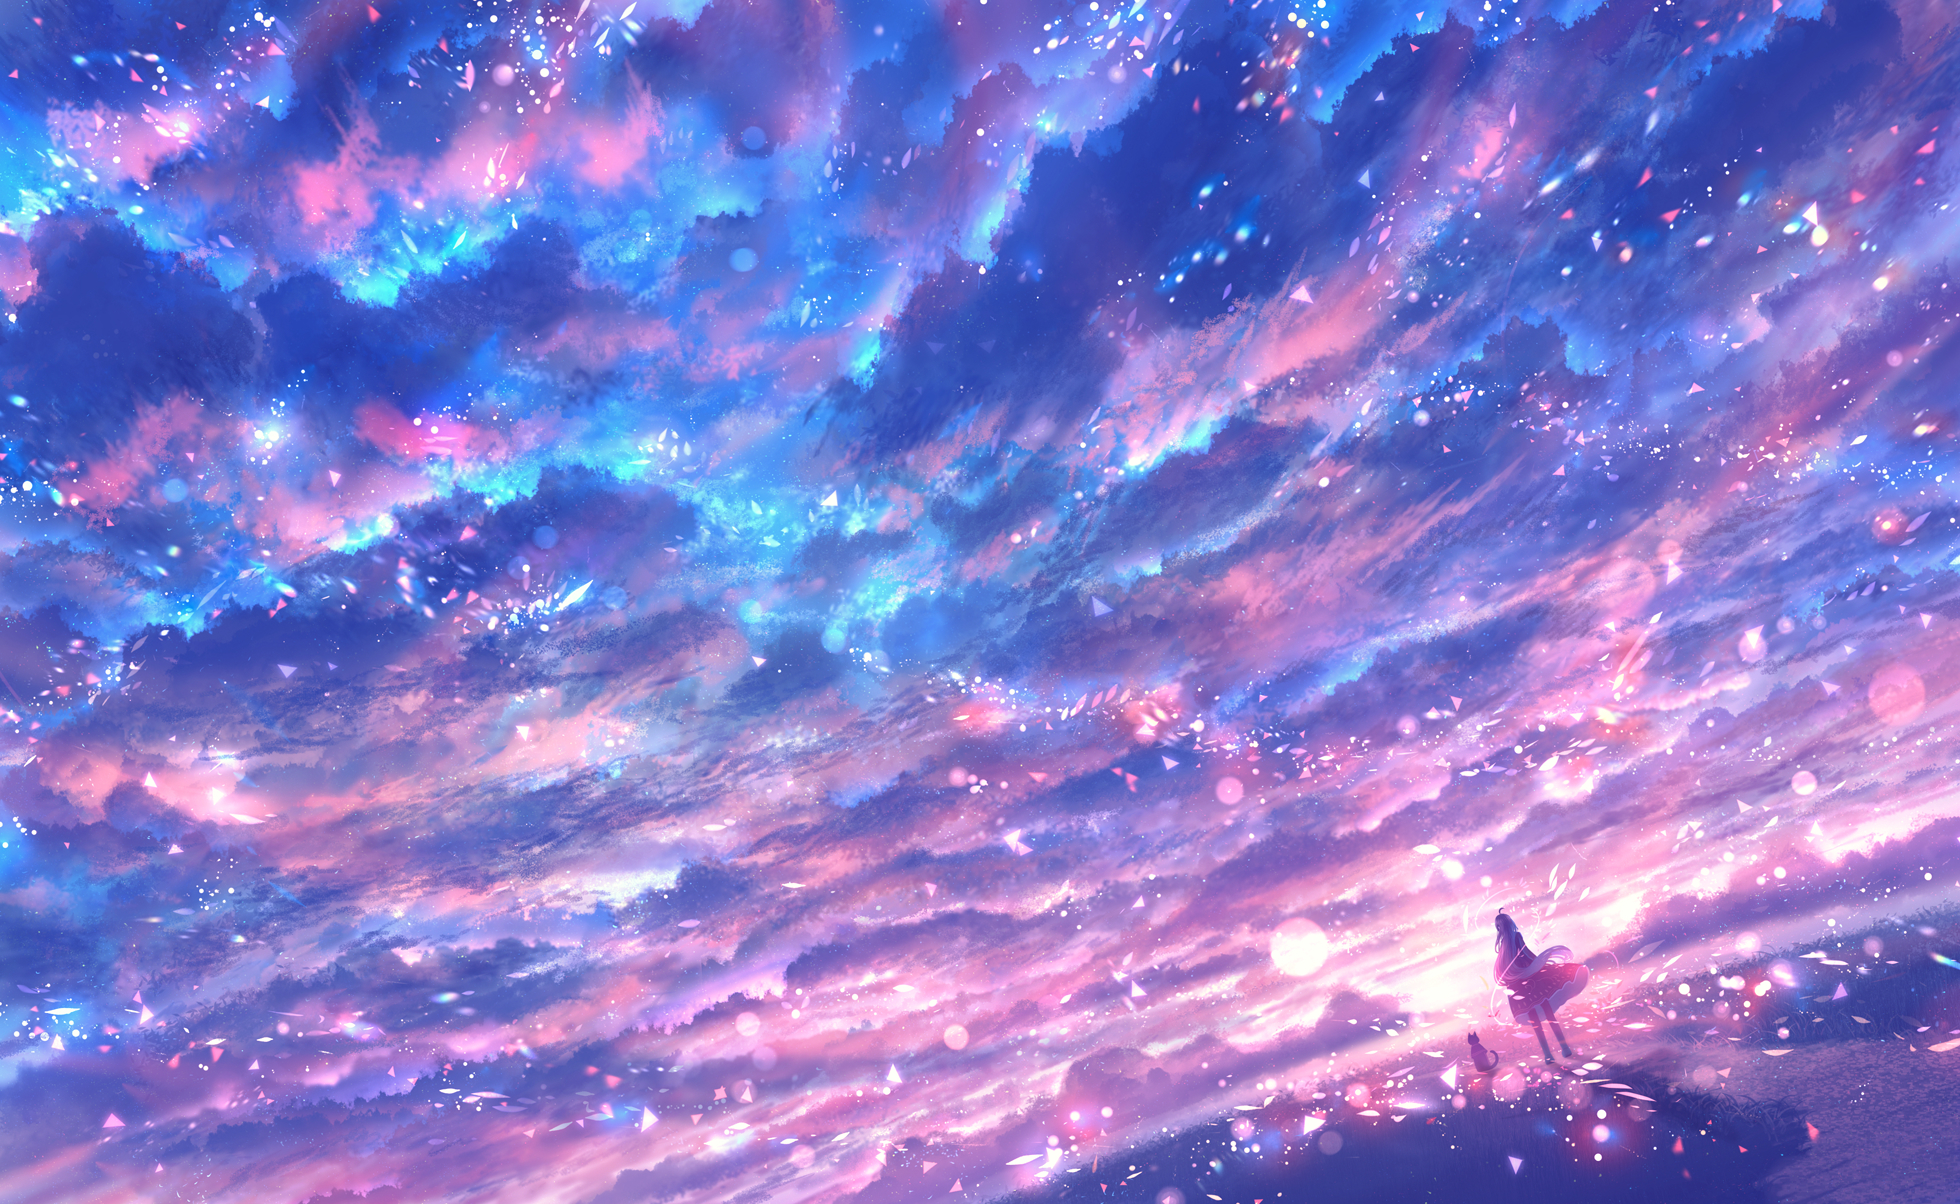 Hình nền anime bầu trời này là một trong những bức ảnh đẹp nhất mà bạn từng thấy. Màu sắc trời đổi màu và ánh sáng lung linh tạo nên một không gian tuyệt đẹp, khiến bạn cảm thấy thực sự phấn khích khi xem nó.